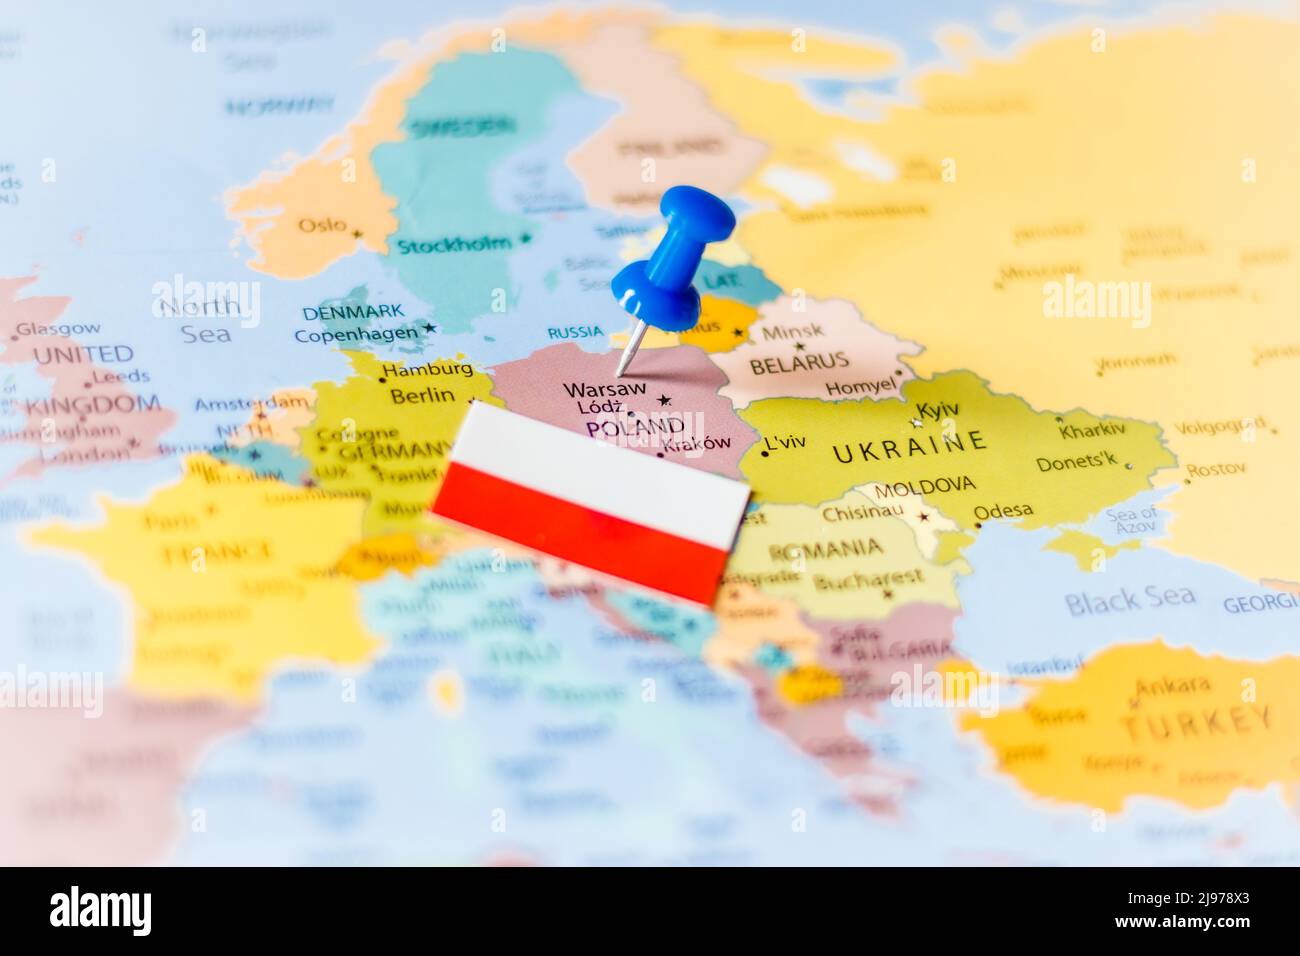 Alfiler azul que apunta a Polonia junto con una bandera polaca en un mapa político del mundo Foto de stock